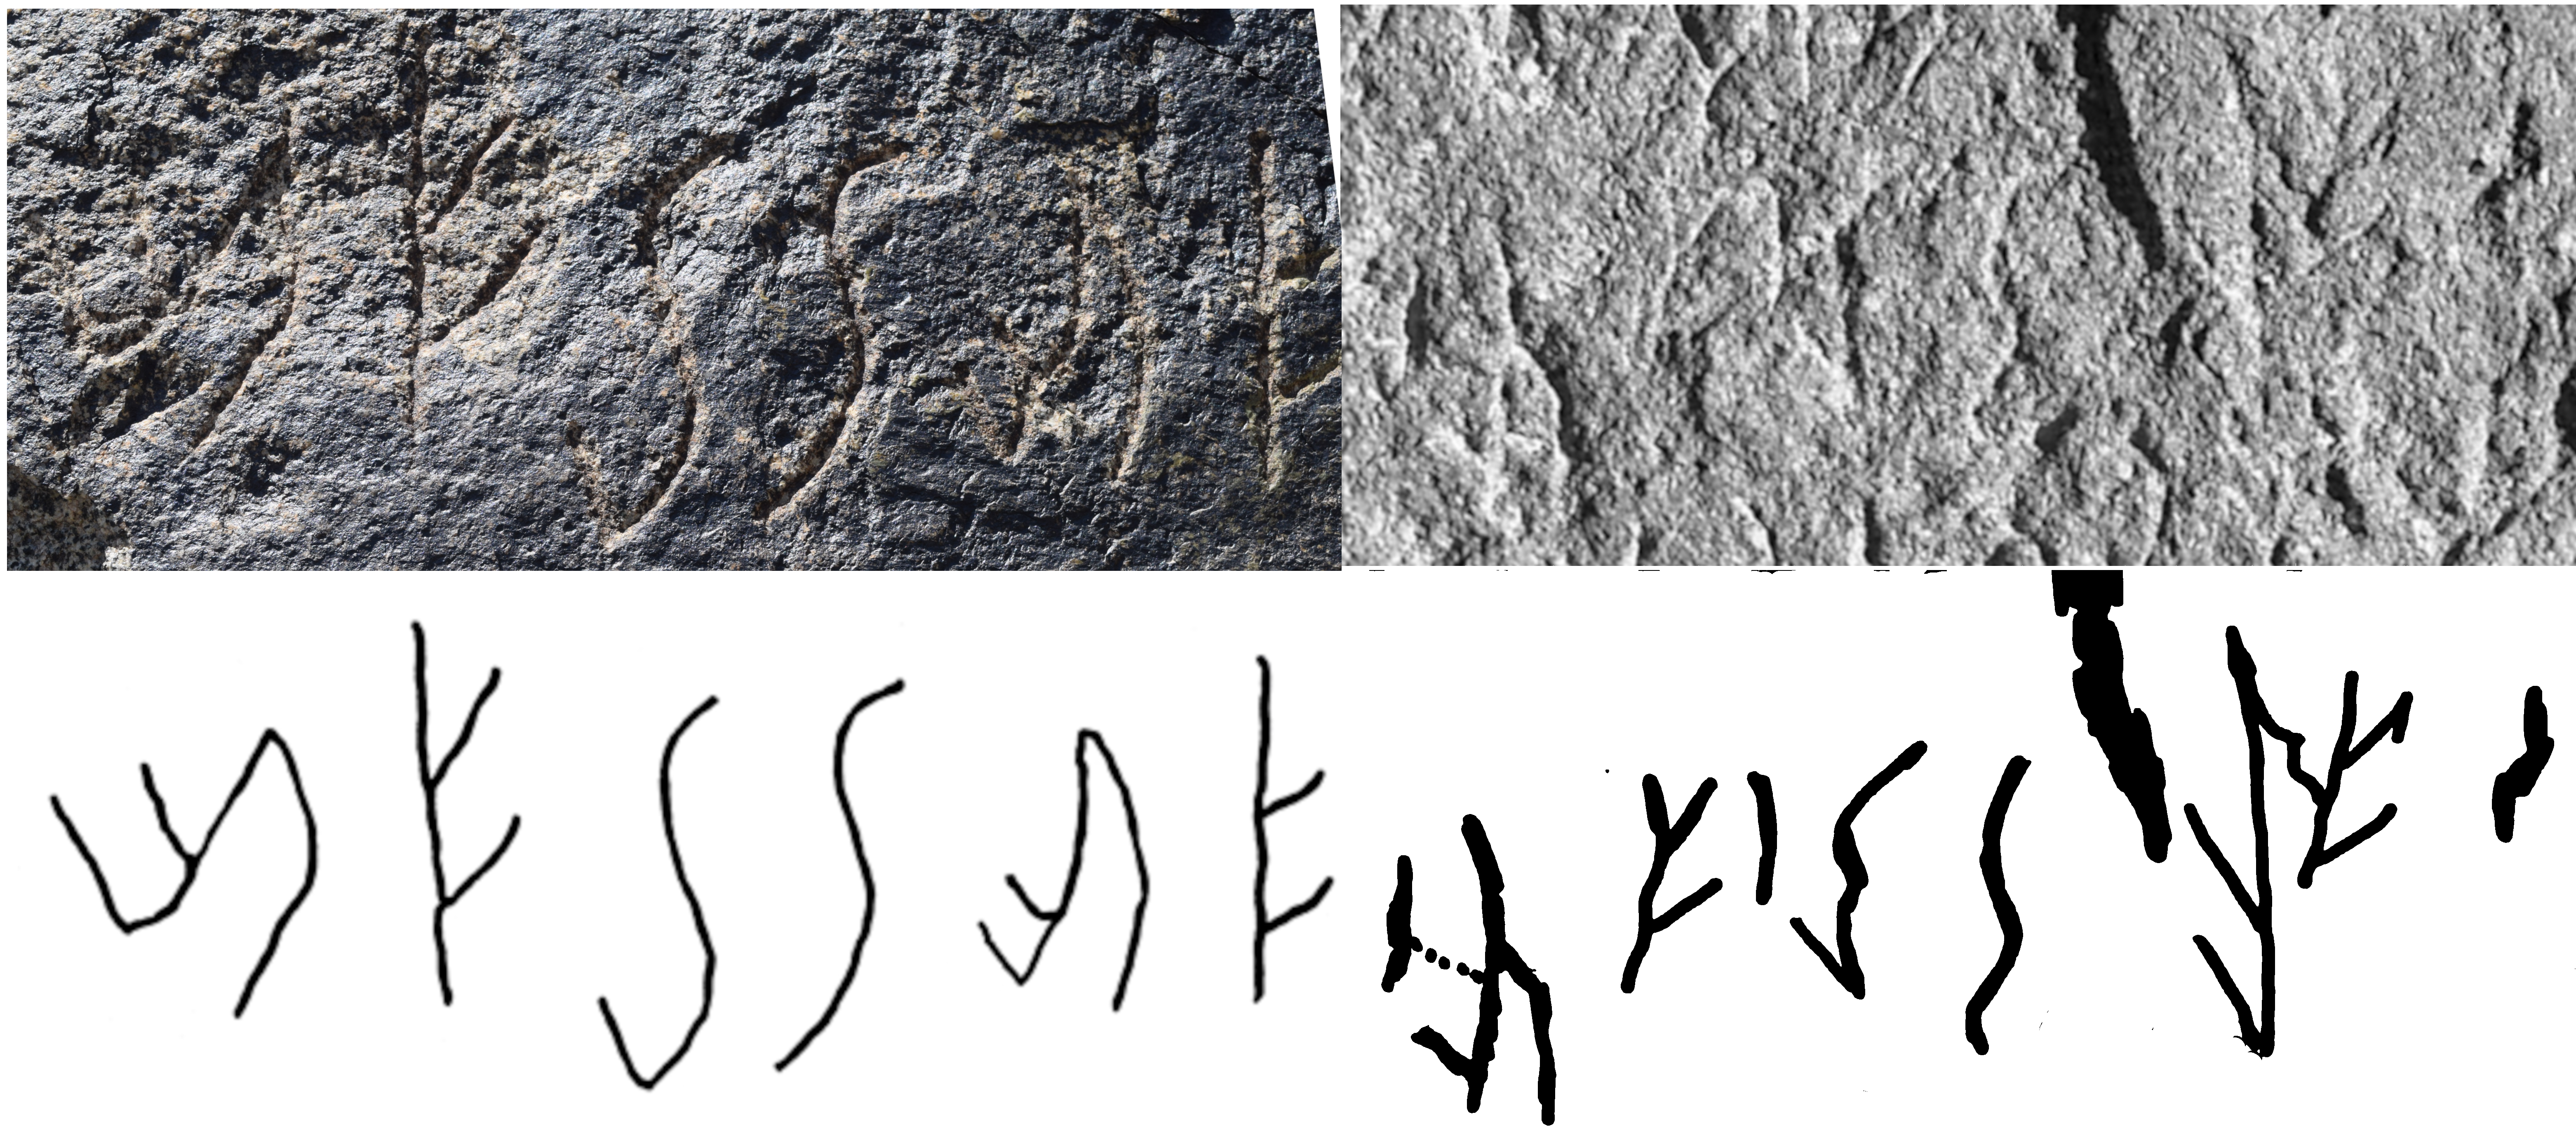 Unknown Kushan Script partially deciphered unbekannte Kuschana-Schrift